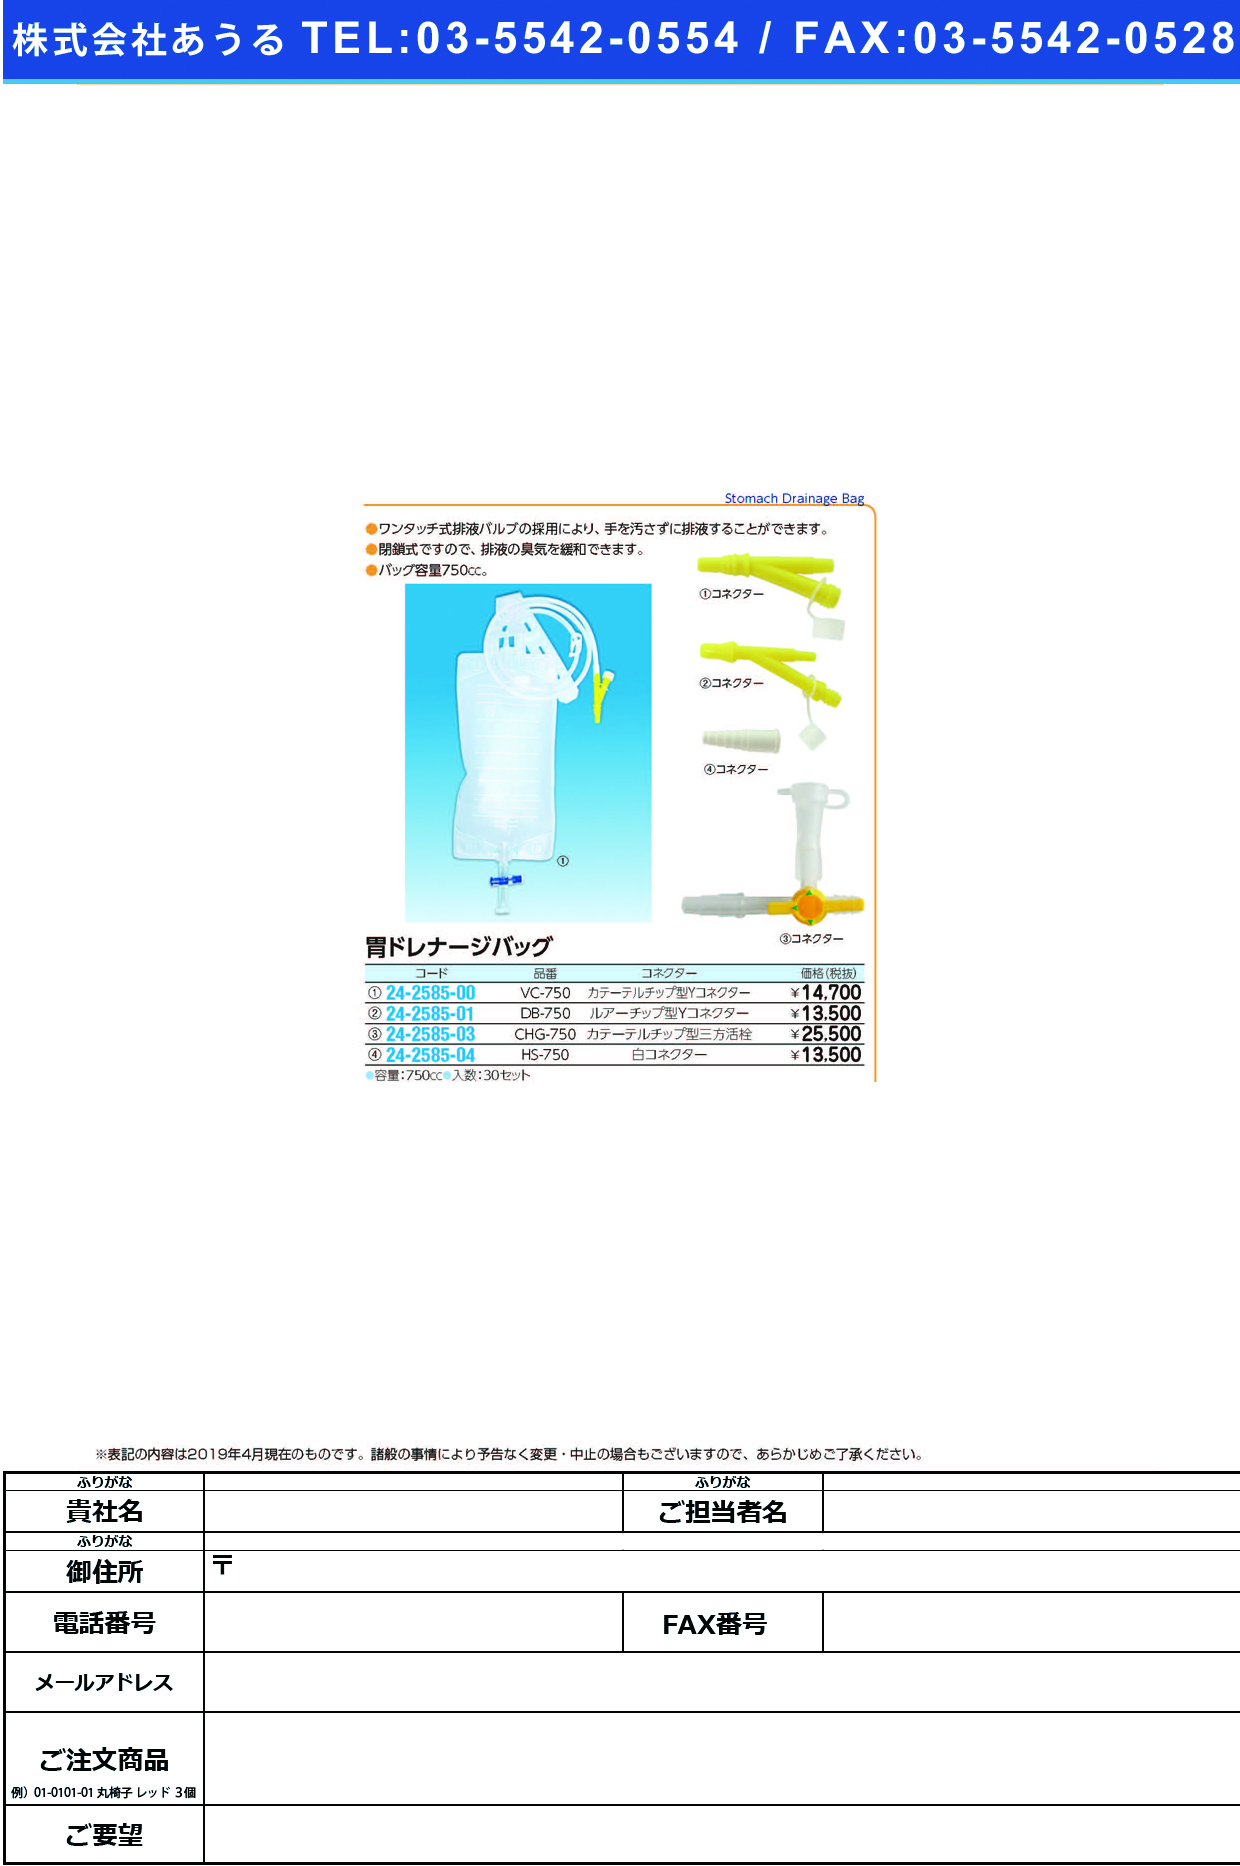 (24-2585-04)胃ドレナージバッグ（白コネクター） HS-750(750CC)30ｾｯﾄ ｲﾄﾞﾚﾅｰｼﾞﾊﾞｯｸﾞｼﾛｺﾈｸﾀｰ【1箱単位】【2019年カタログ商品】